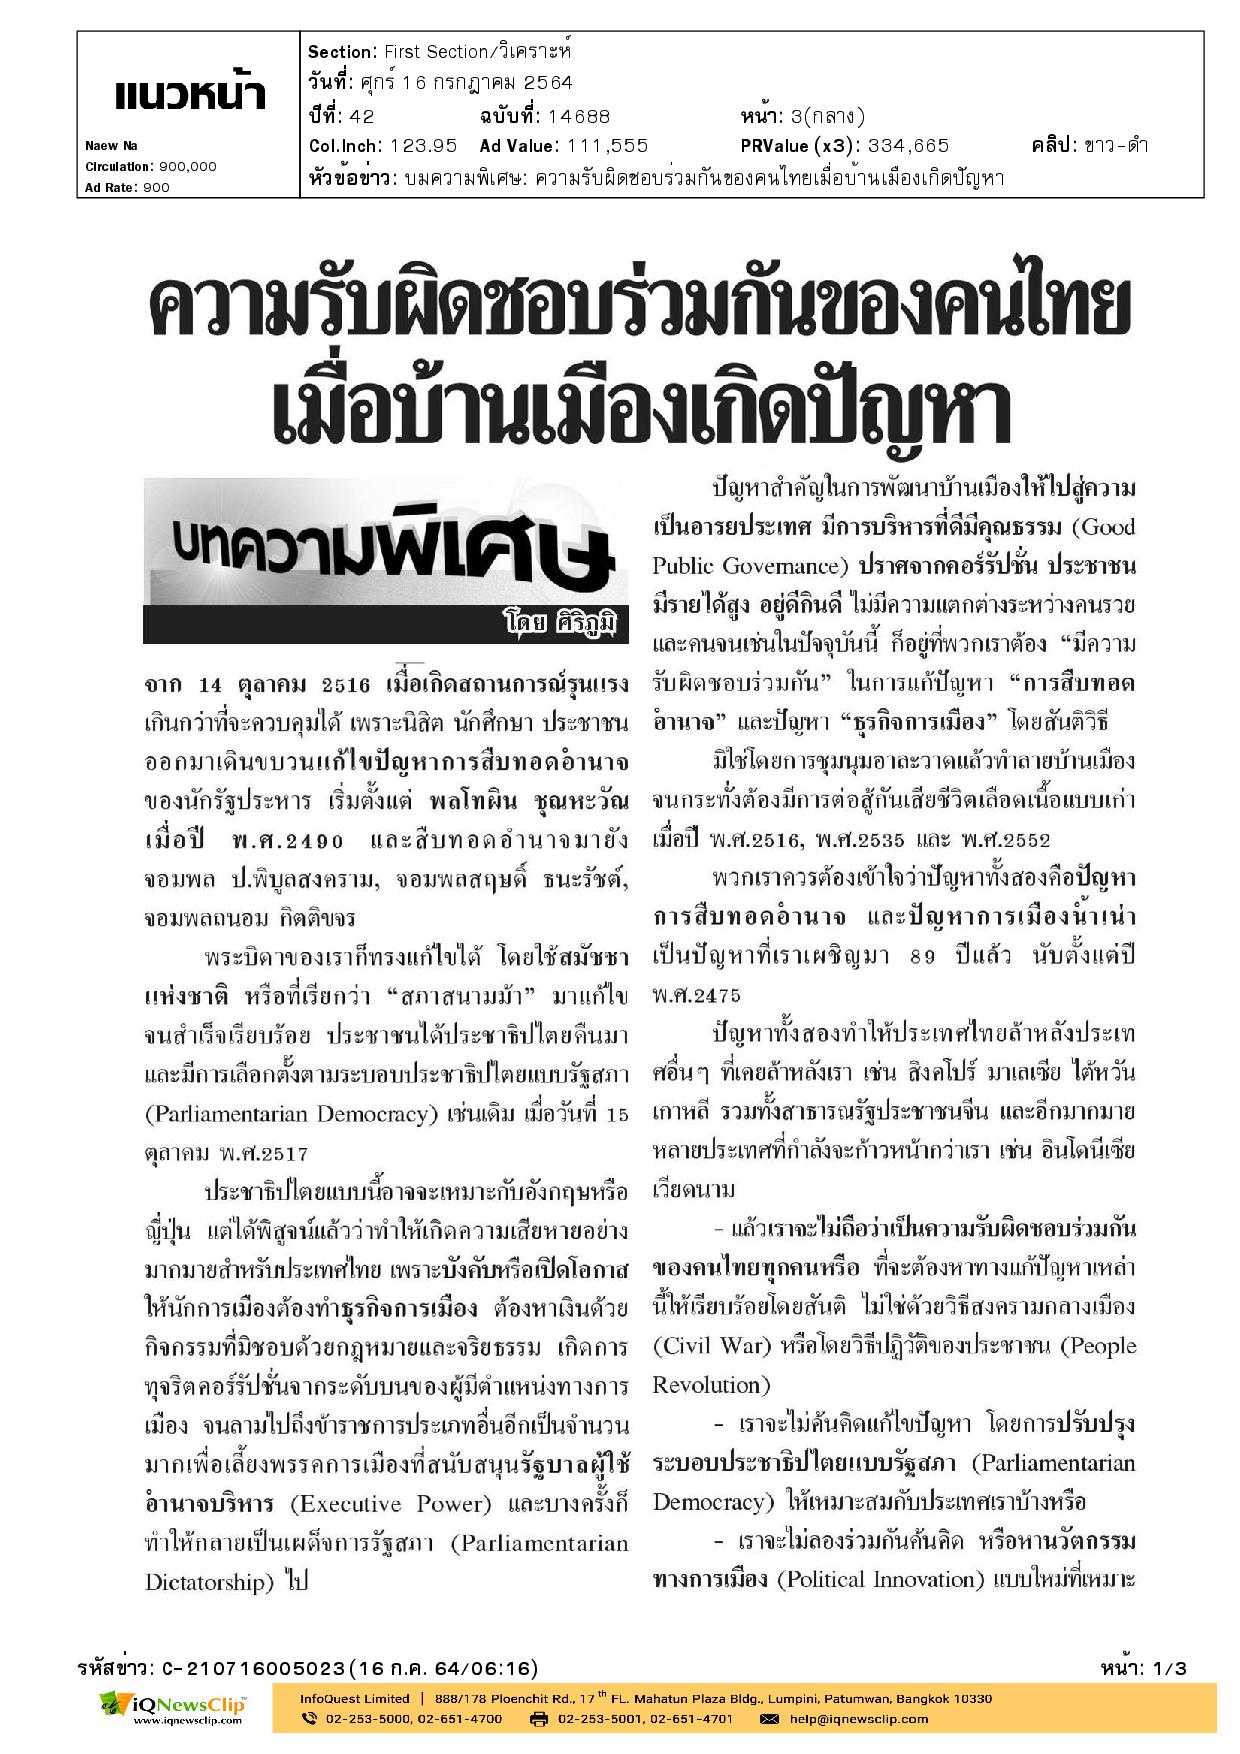 บทความเรื่อง ความรับผิดชอบร่วมกันของคนไทย เมื่อบ้านเมือง เกิดปัญหา